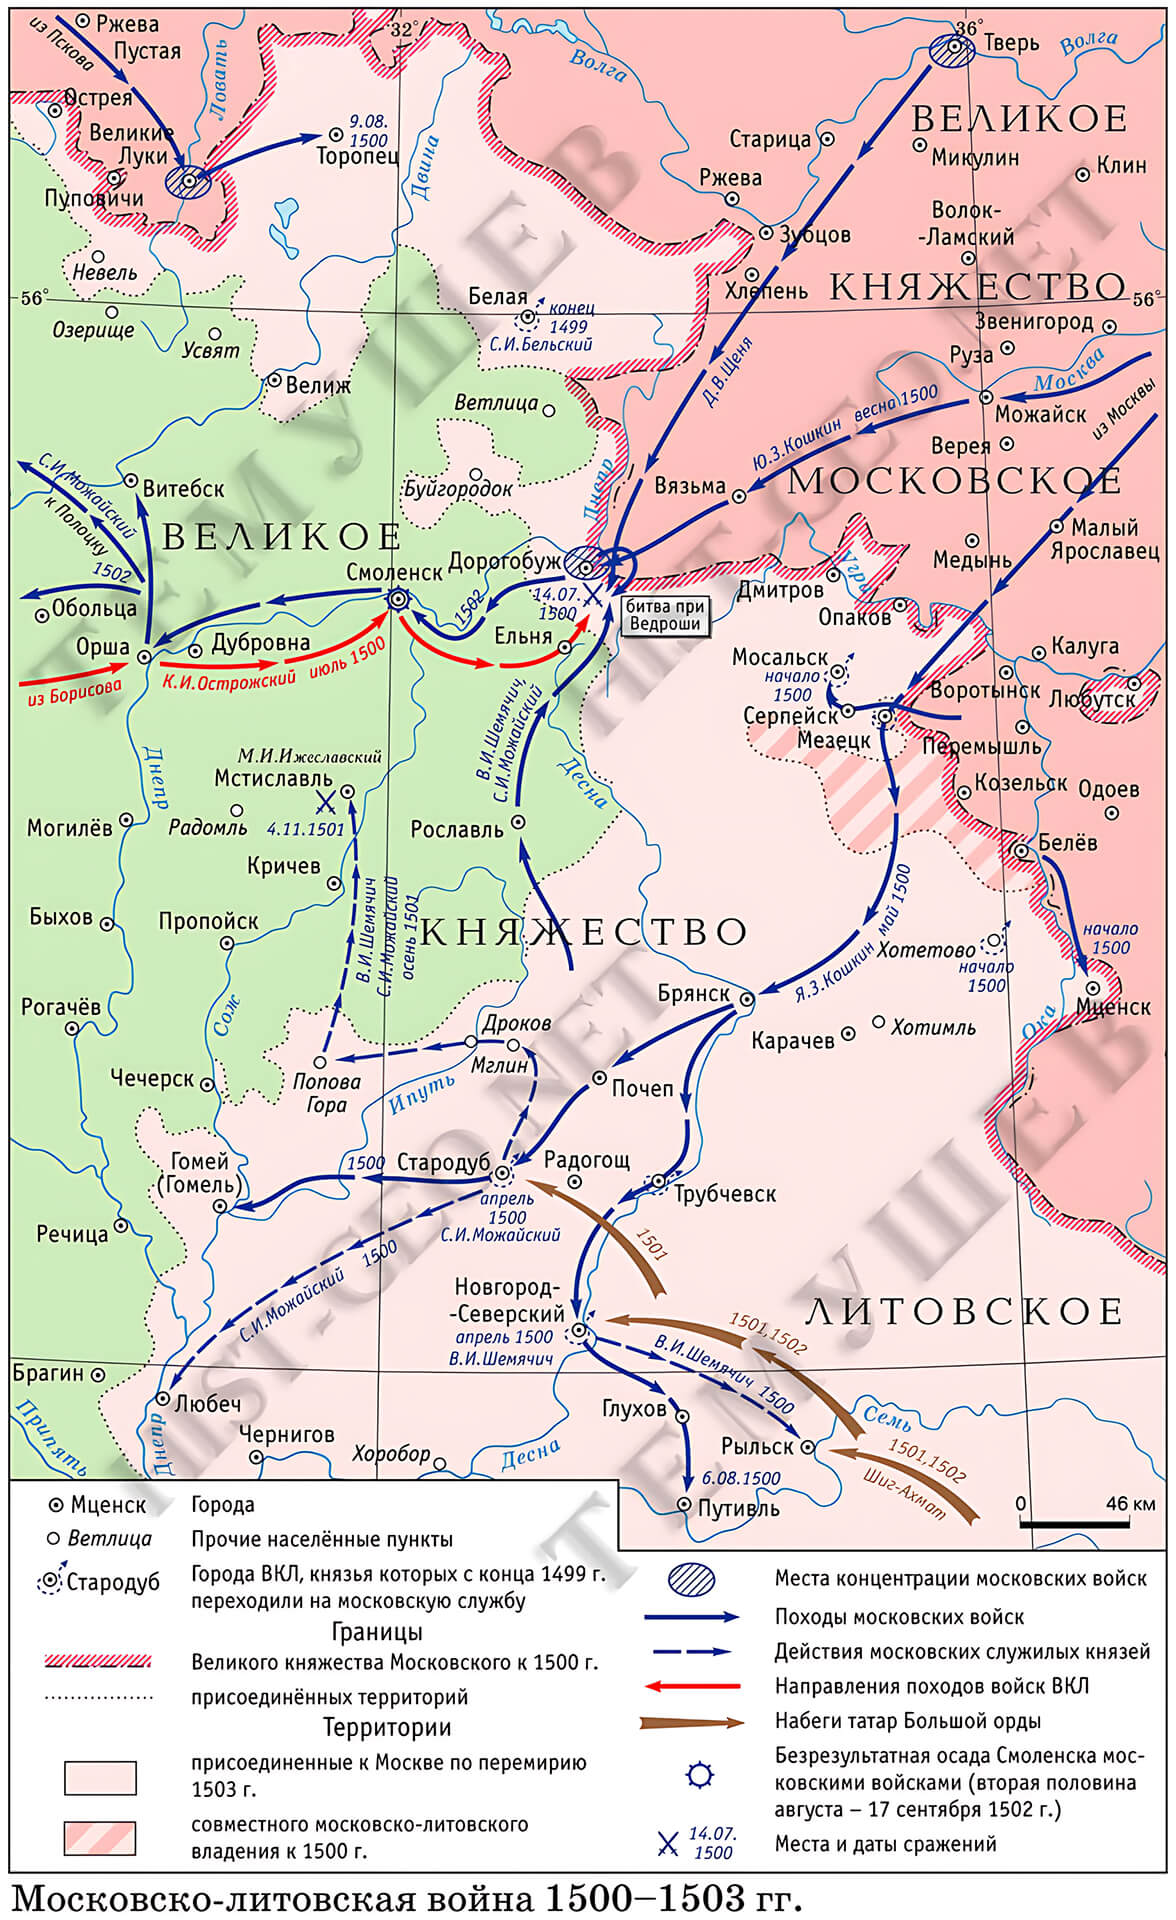 Карта Русско-литовской войны 1500-1503 г.